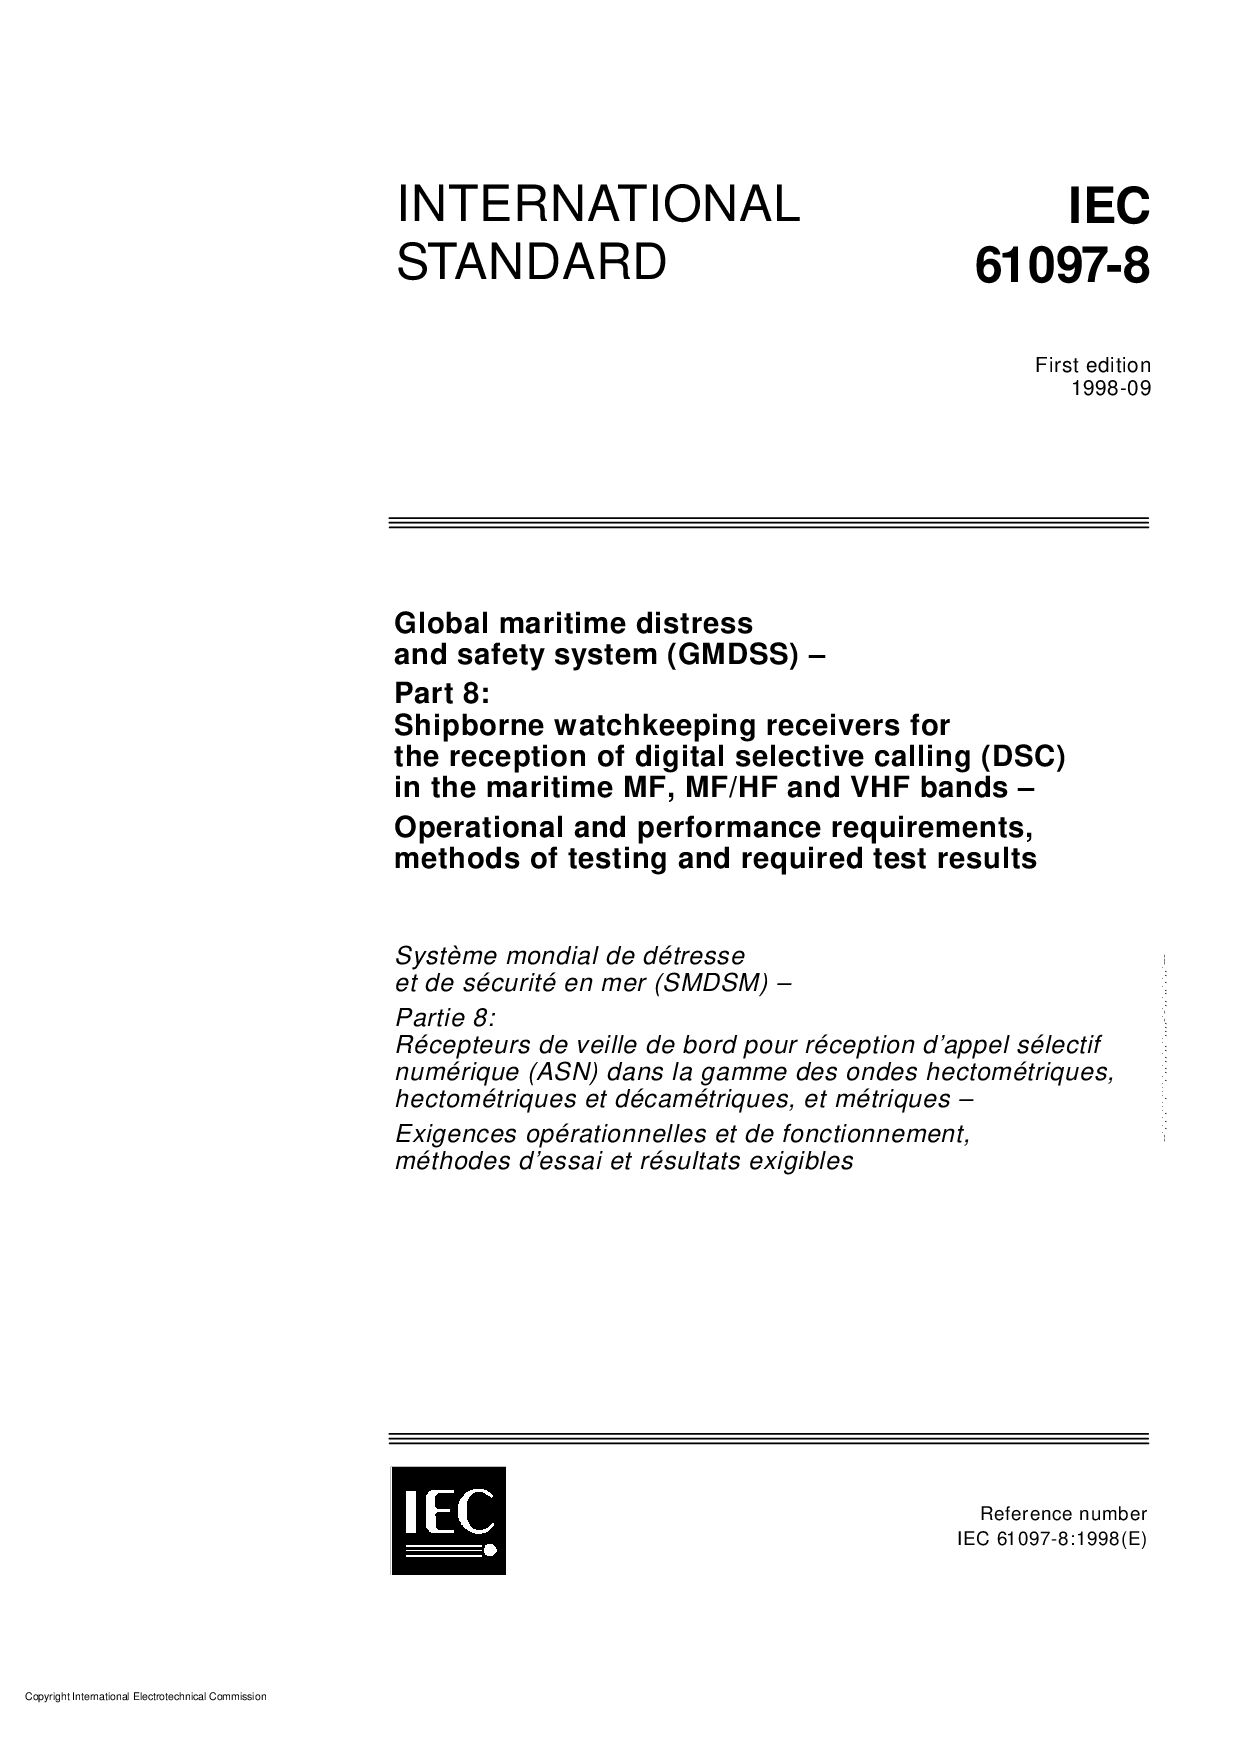 IEC 61097-8:1998封面图